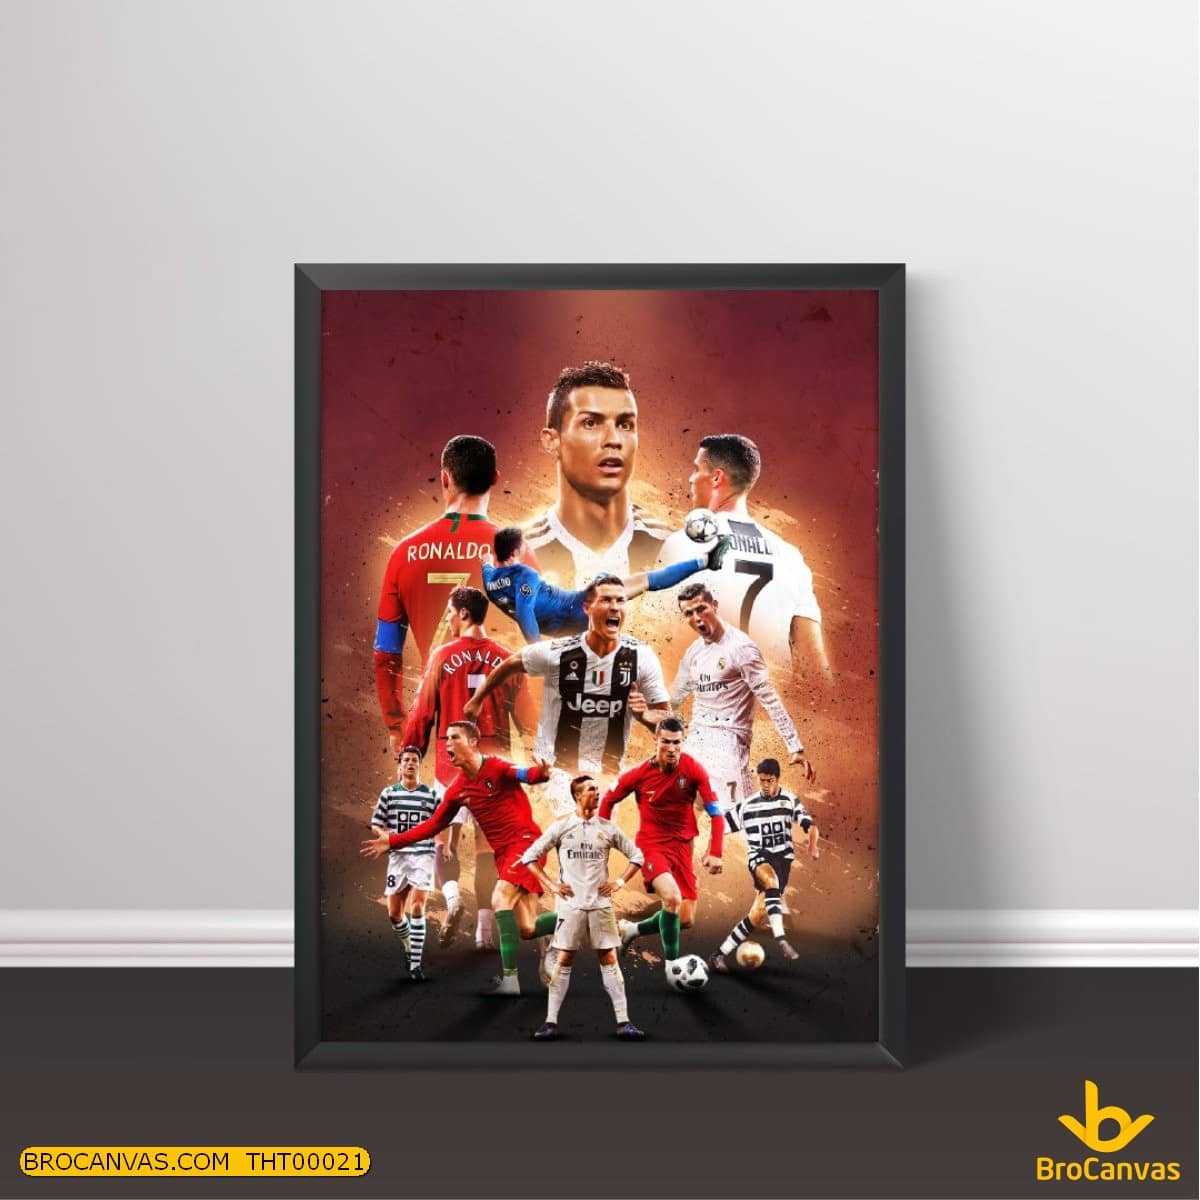 Họa sĩ 9x chỉ mất 15 phút để vẽ tranh chân dung Ronaldo gây sốt  Báo Dân  trí